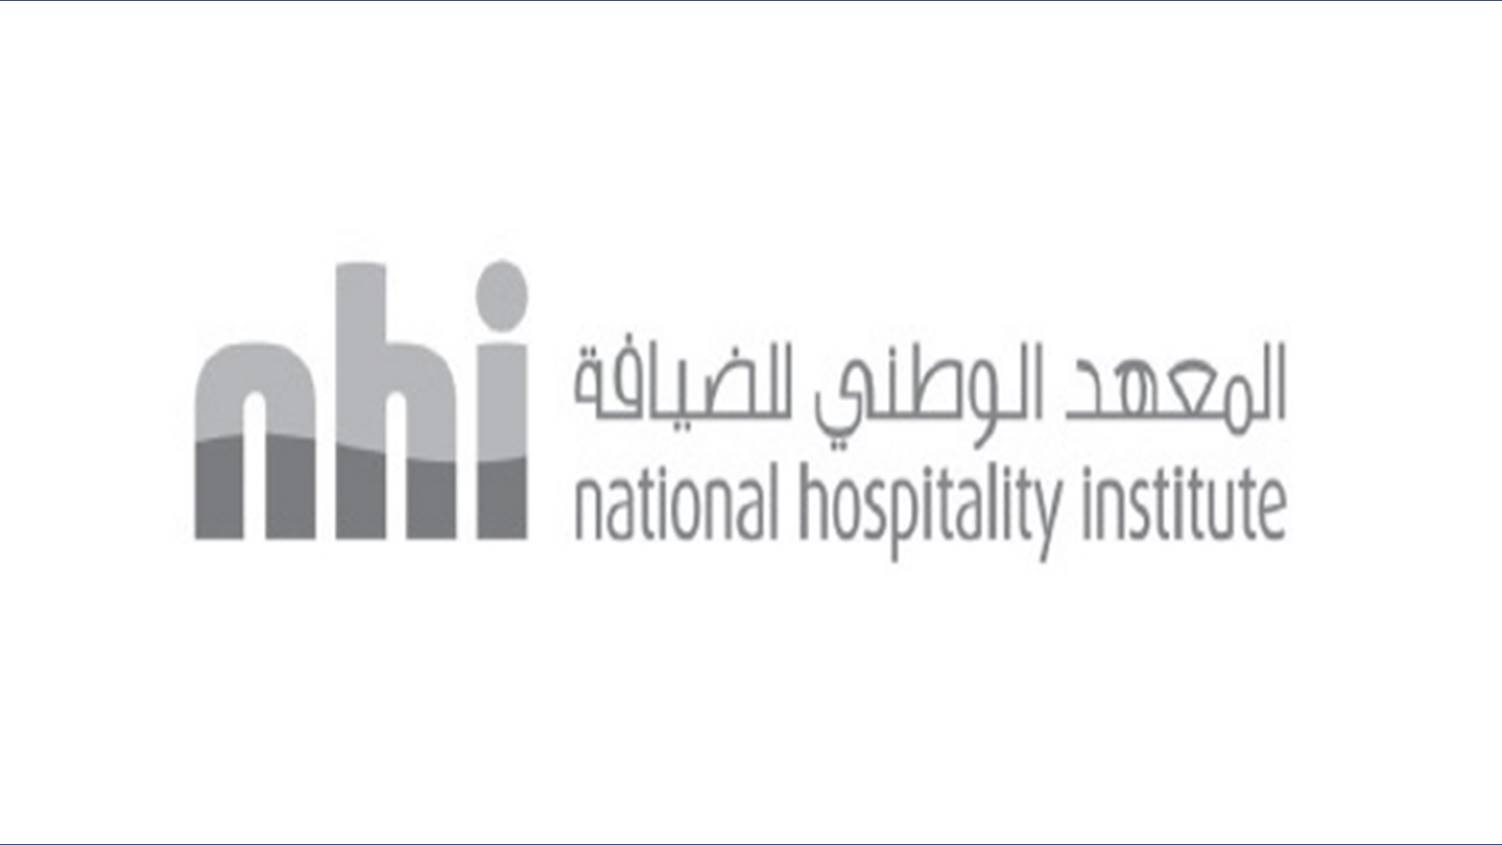 المعهد الوطني للضيافة بسلطنة عمان يقدم وظائف جديدة شاغرة